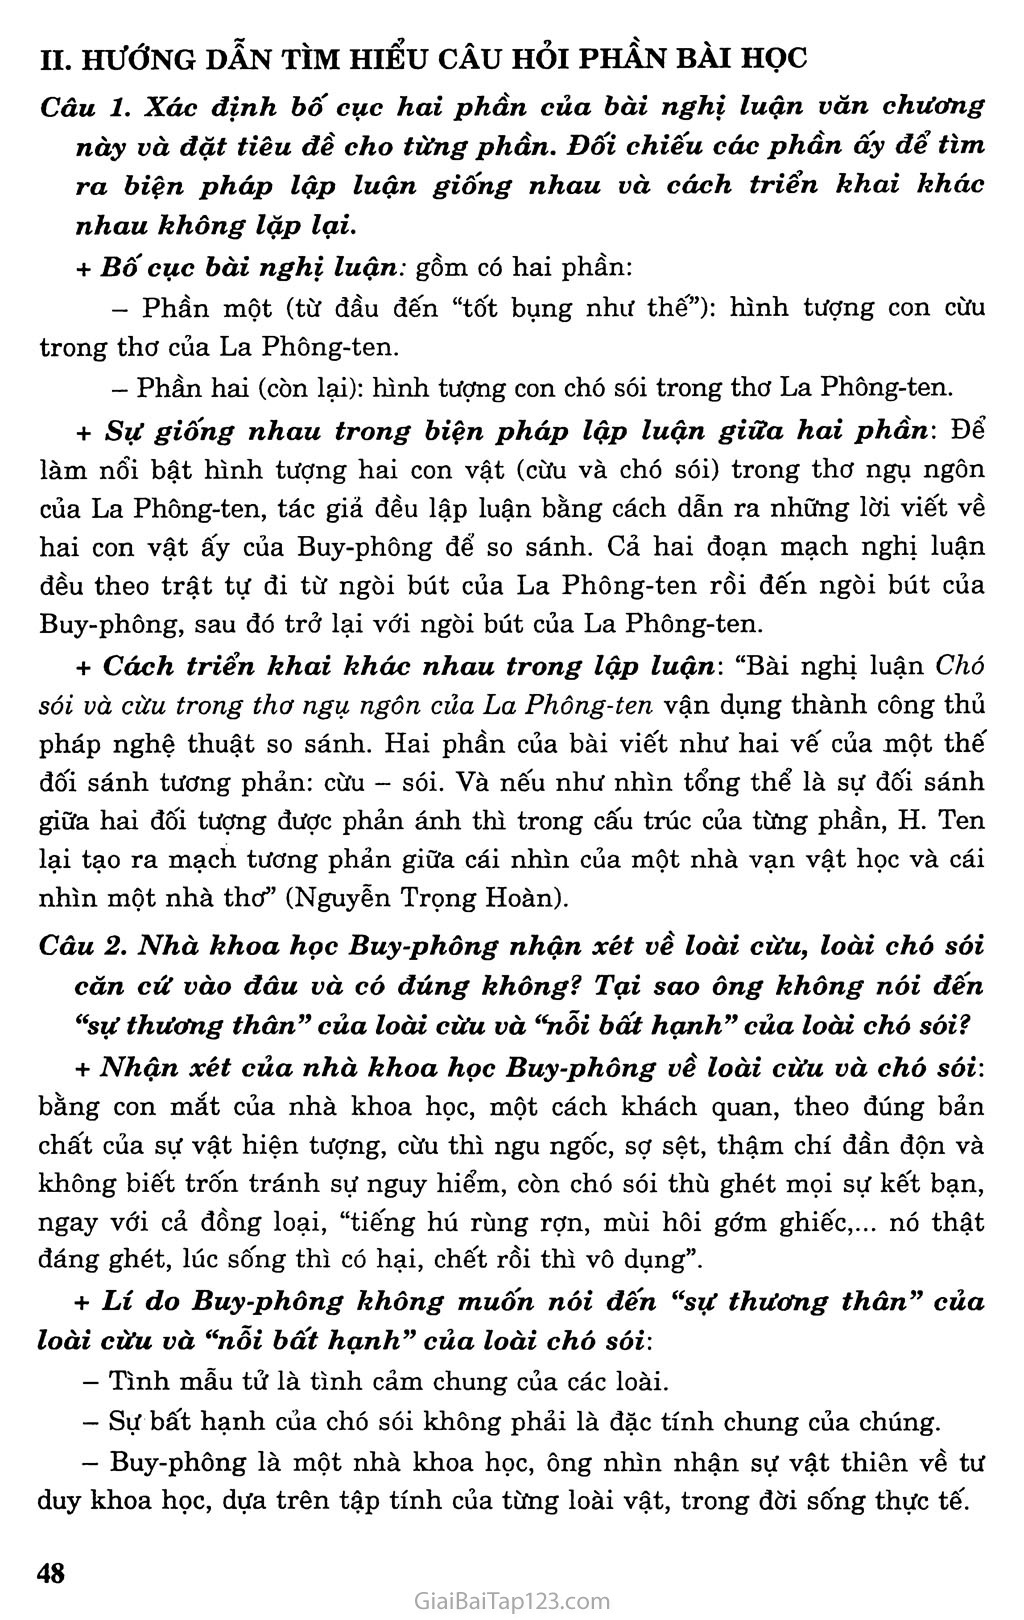 Chó sói và cừu trong thơ ngụ ngôn của La Phông - ten (trích) trang 2